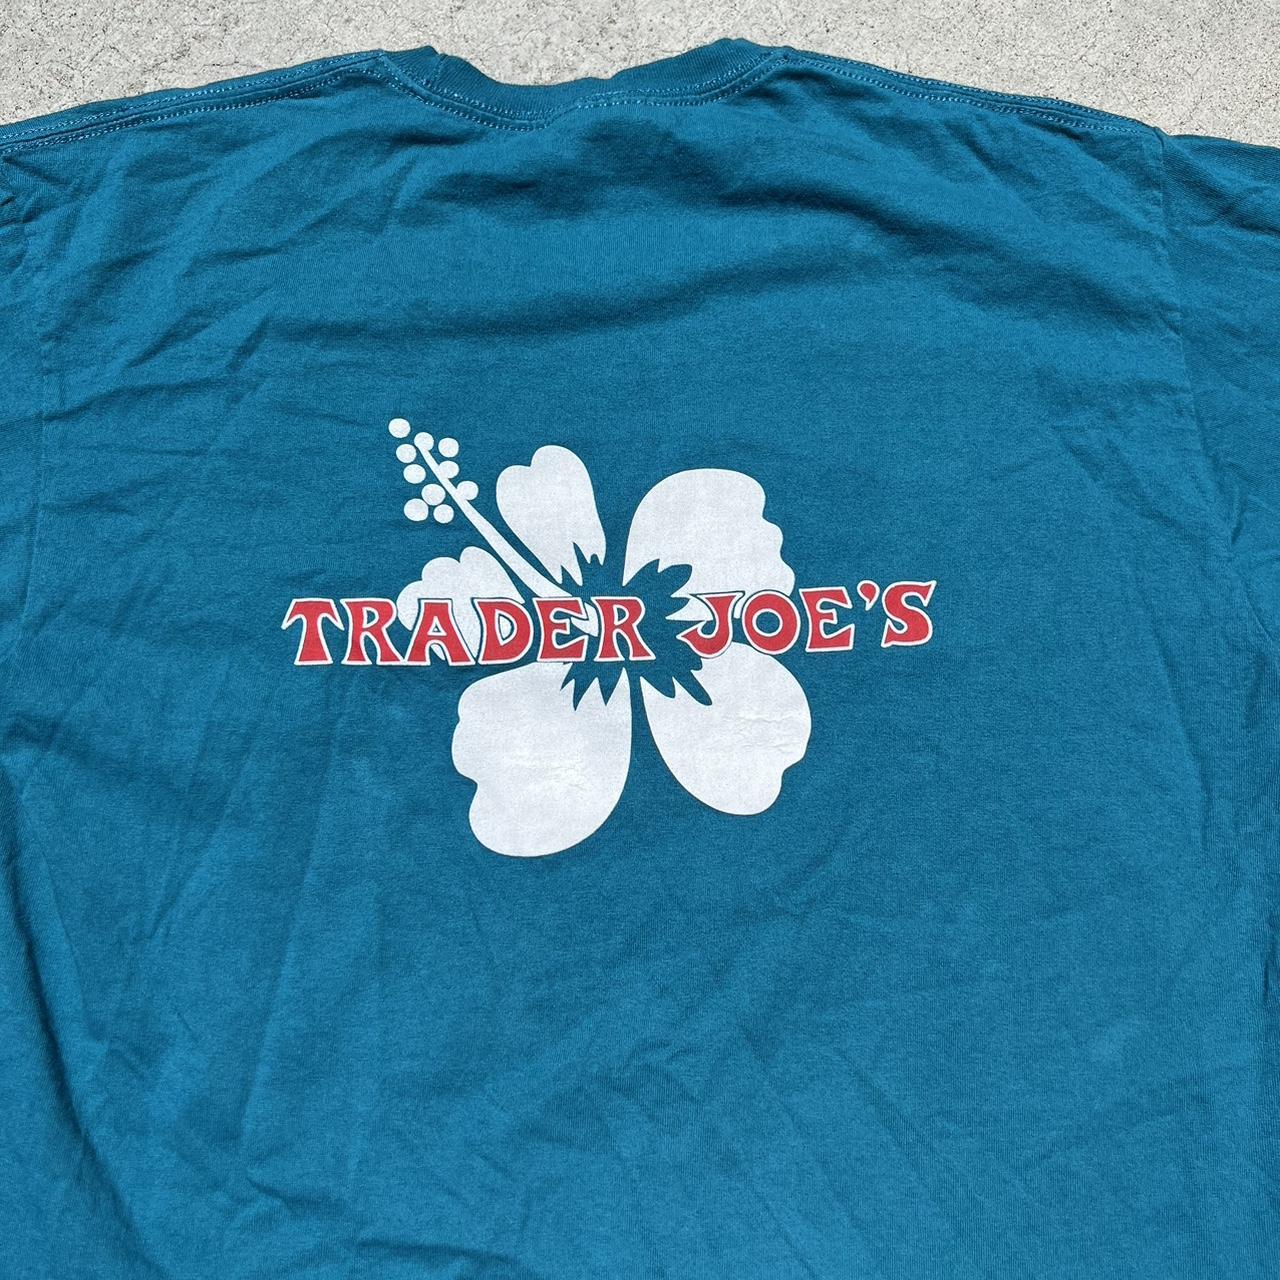 Trader Joe's Men's T-shirt | Depop